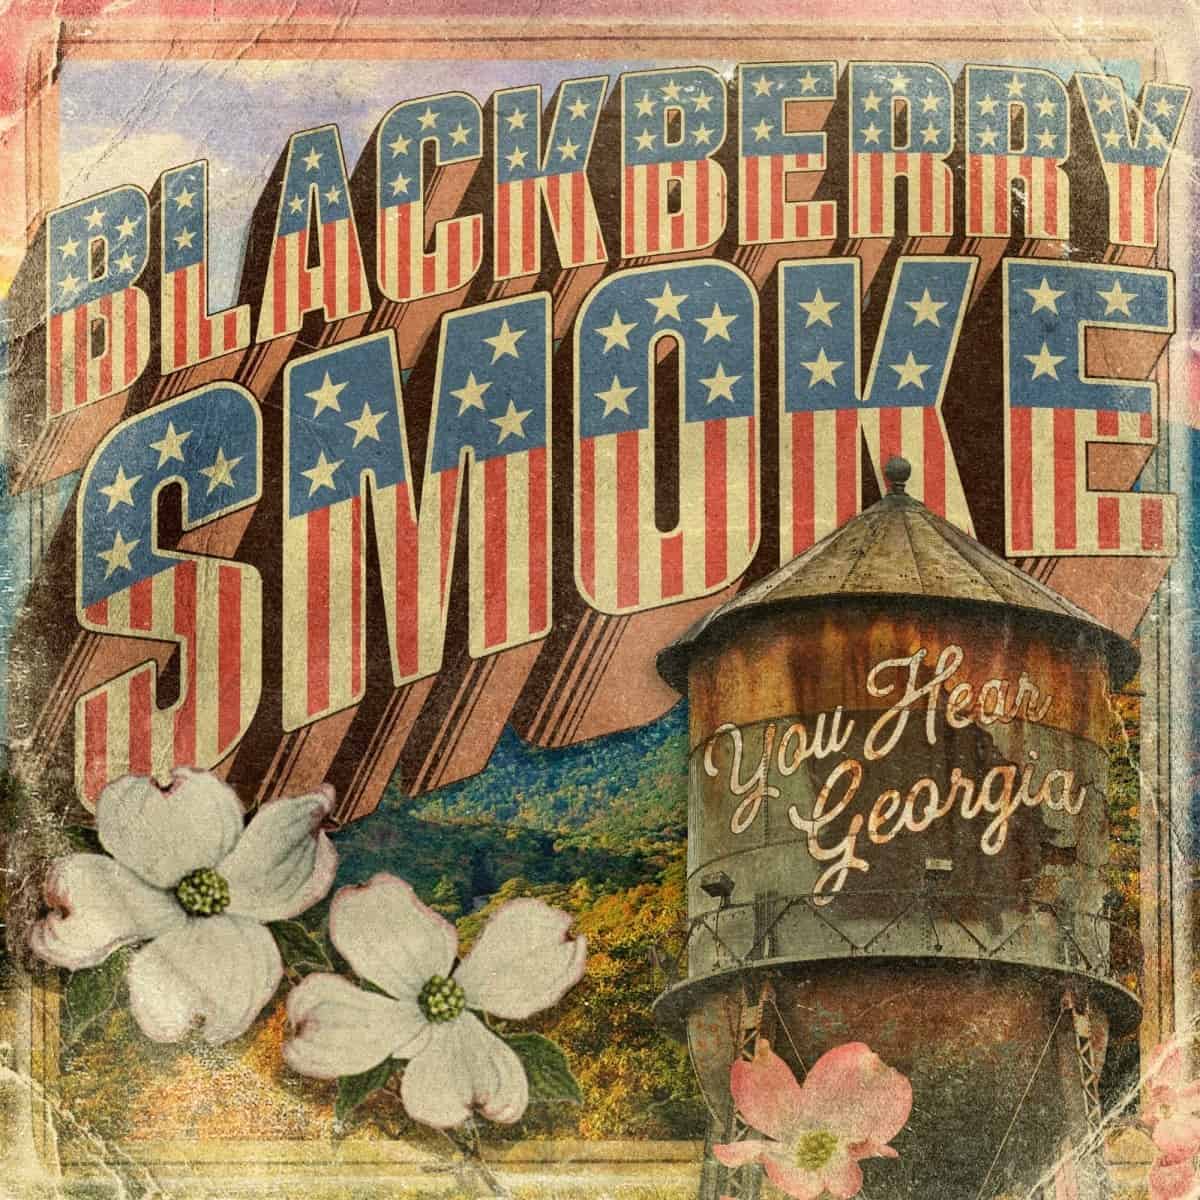 BLACKBERRY SMOKE - You Hear Georgia - CD